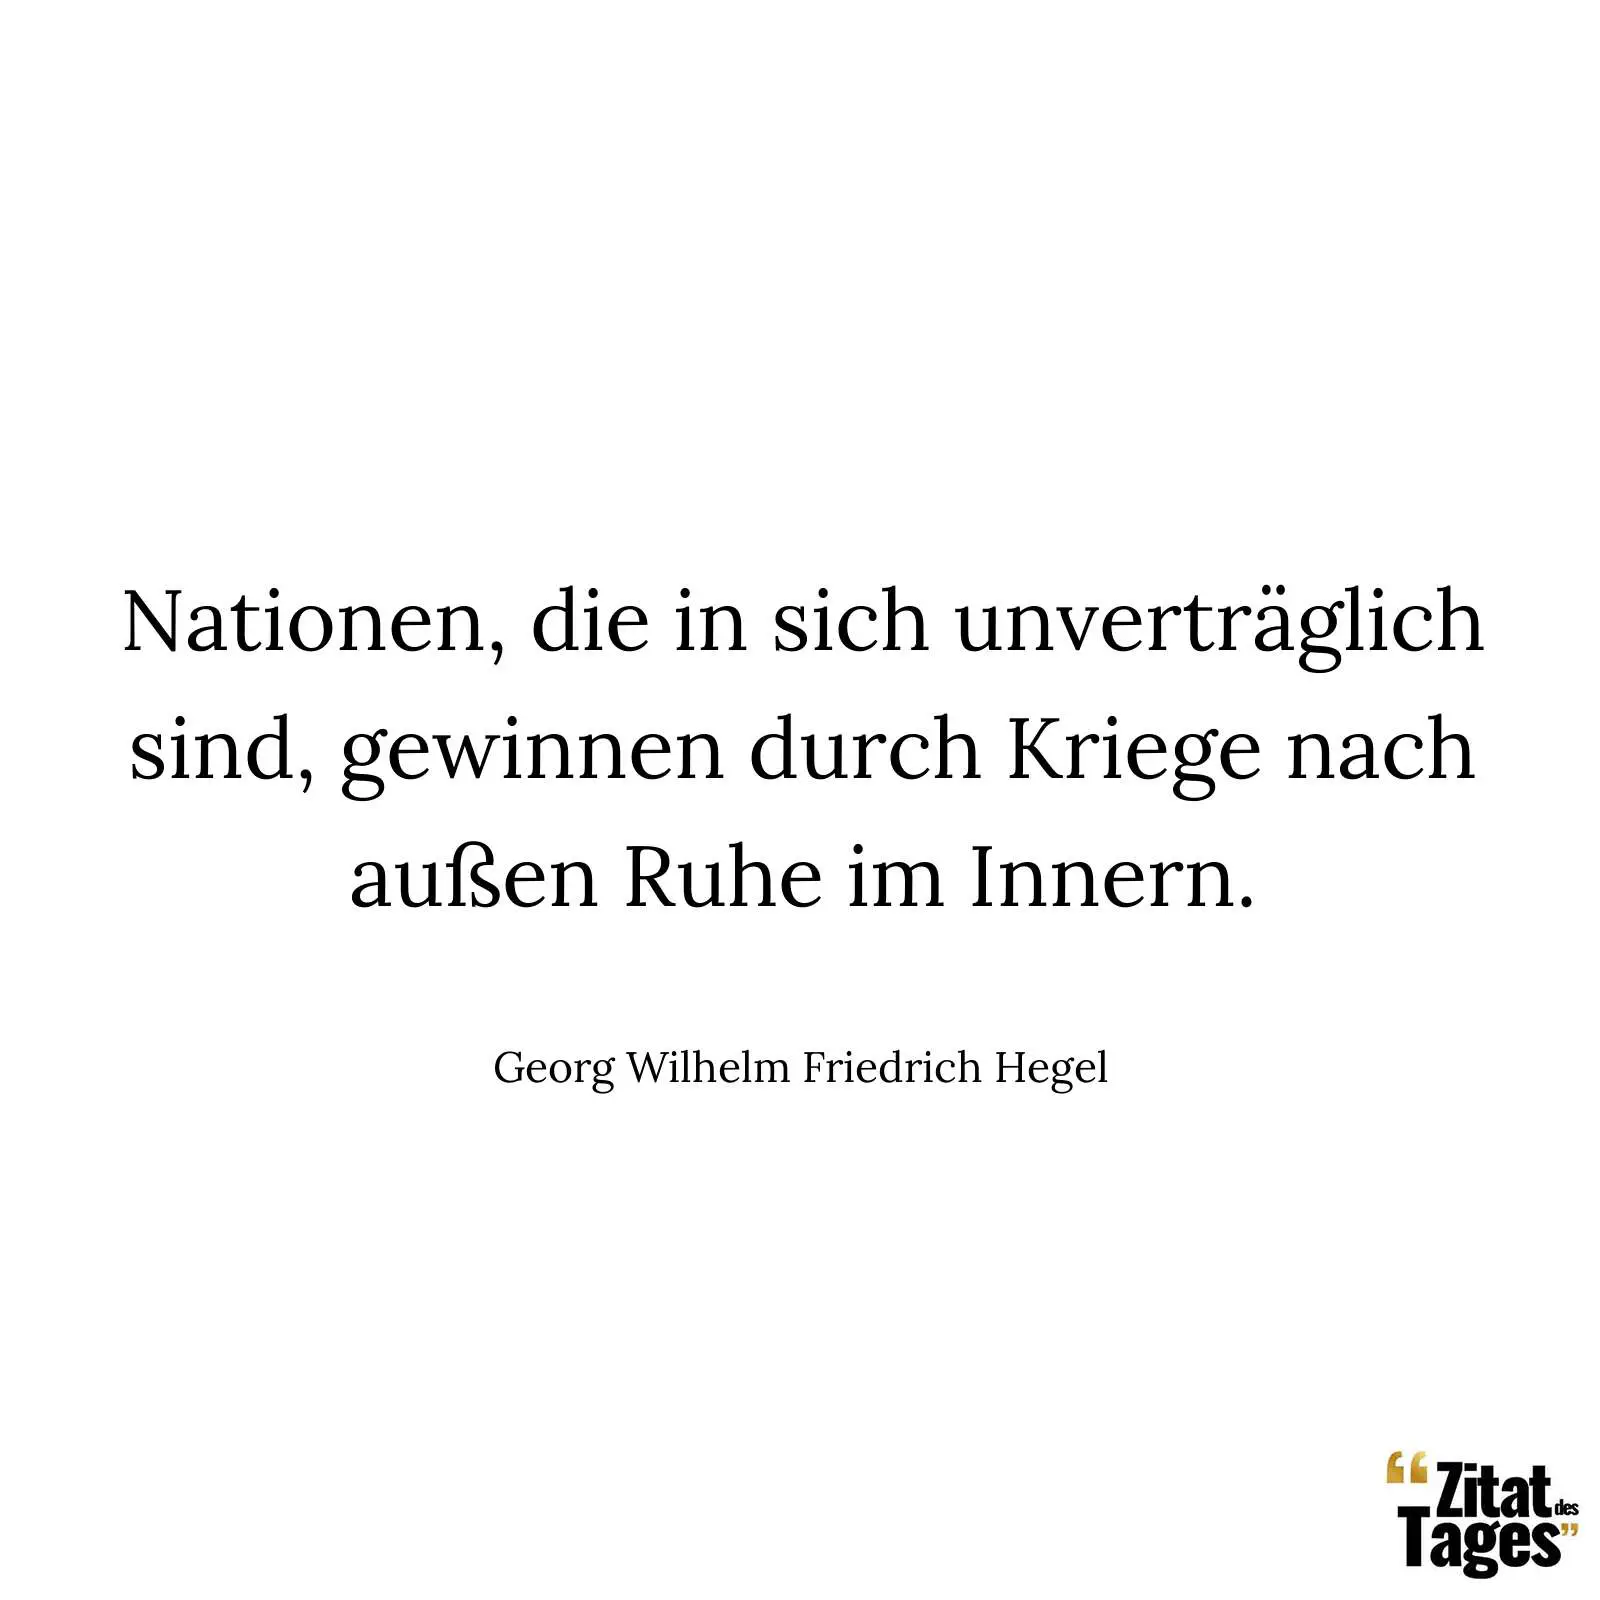 Nationen, die in sich unverträglich sind, gewinnen durch Kriege nach außen Ruhe im Innern. - Georg Wilhelm Friedrich Hegel